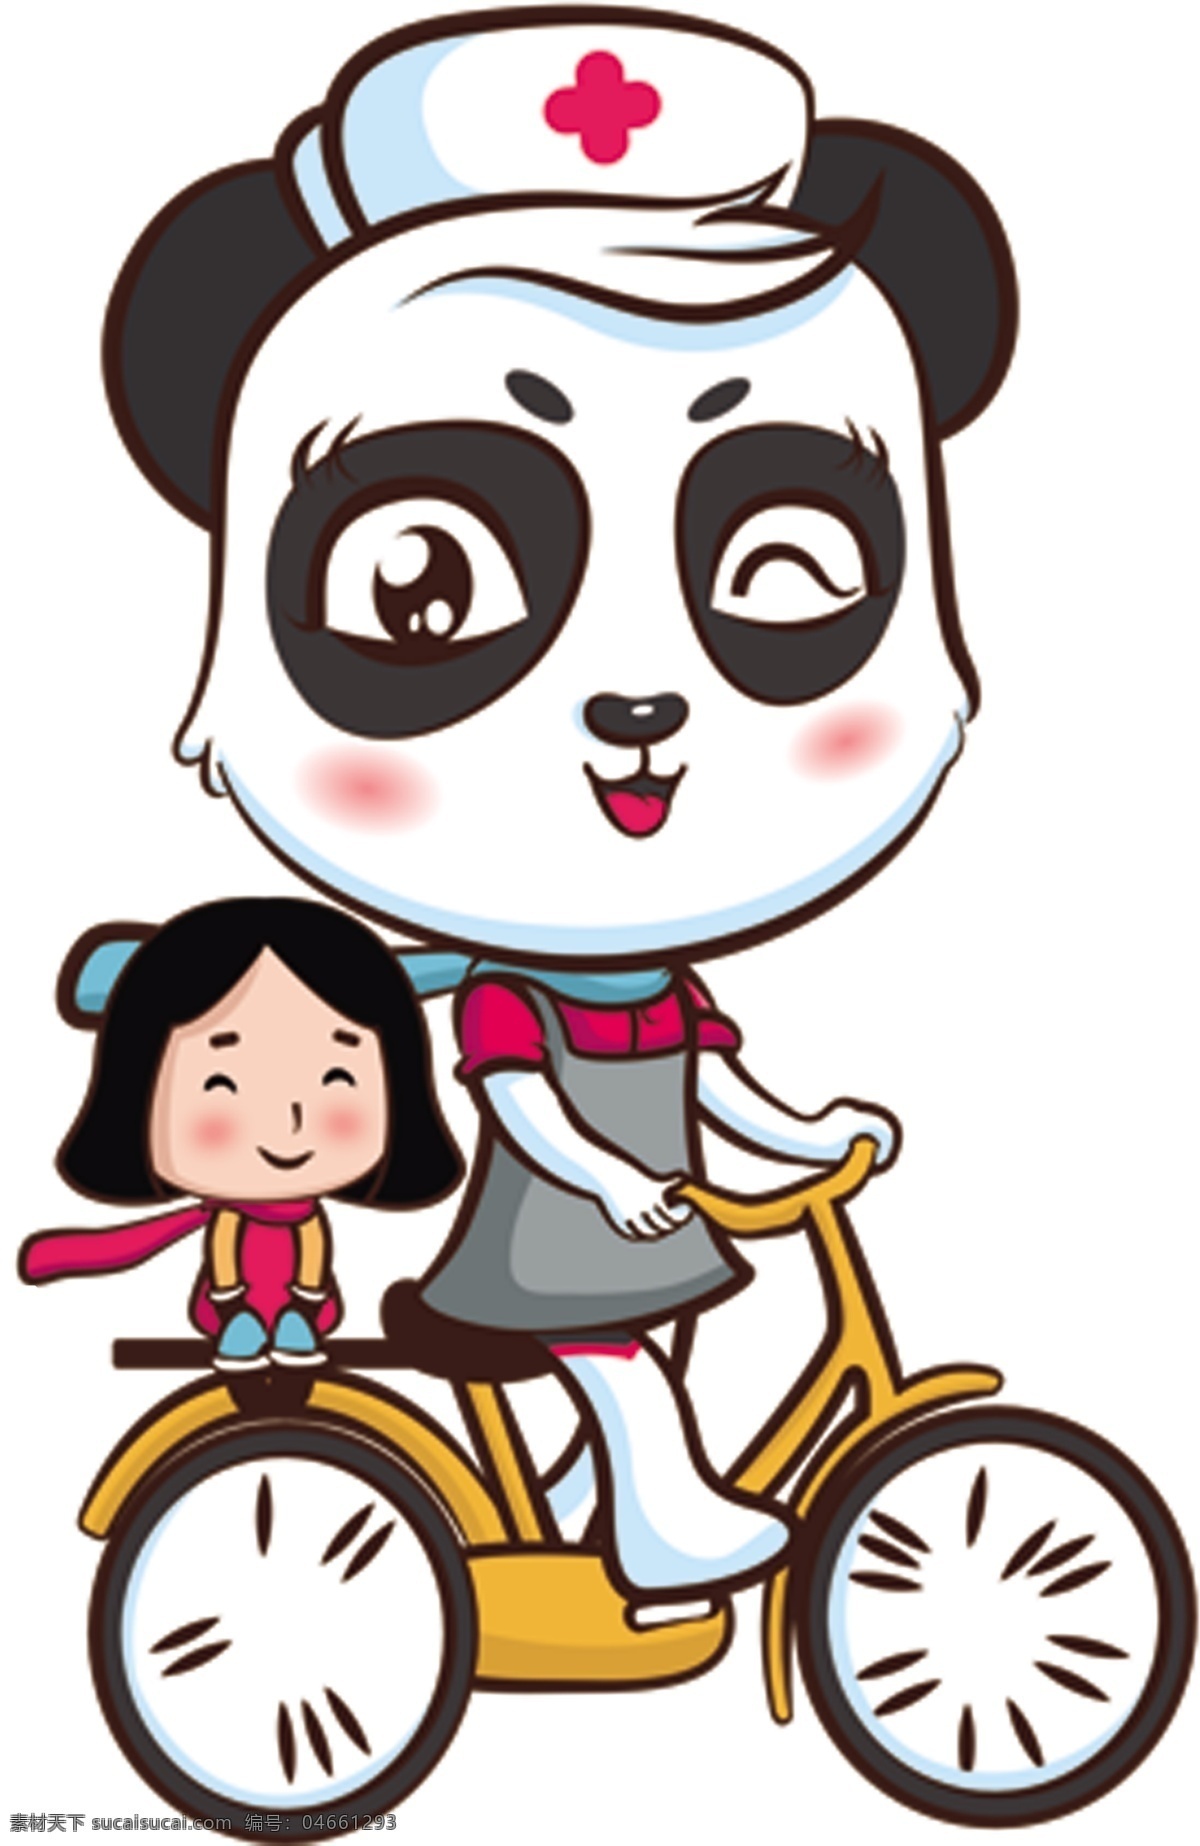 小美 医生 logo 小美医生 熊猫 标志 自行车 小孩 卡通 小朋友 骑车 logo设计